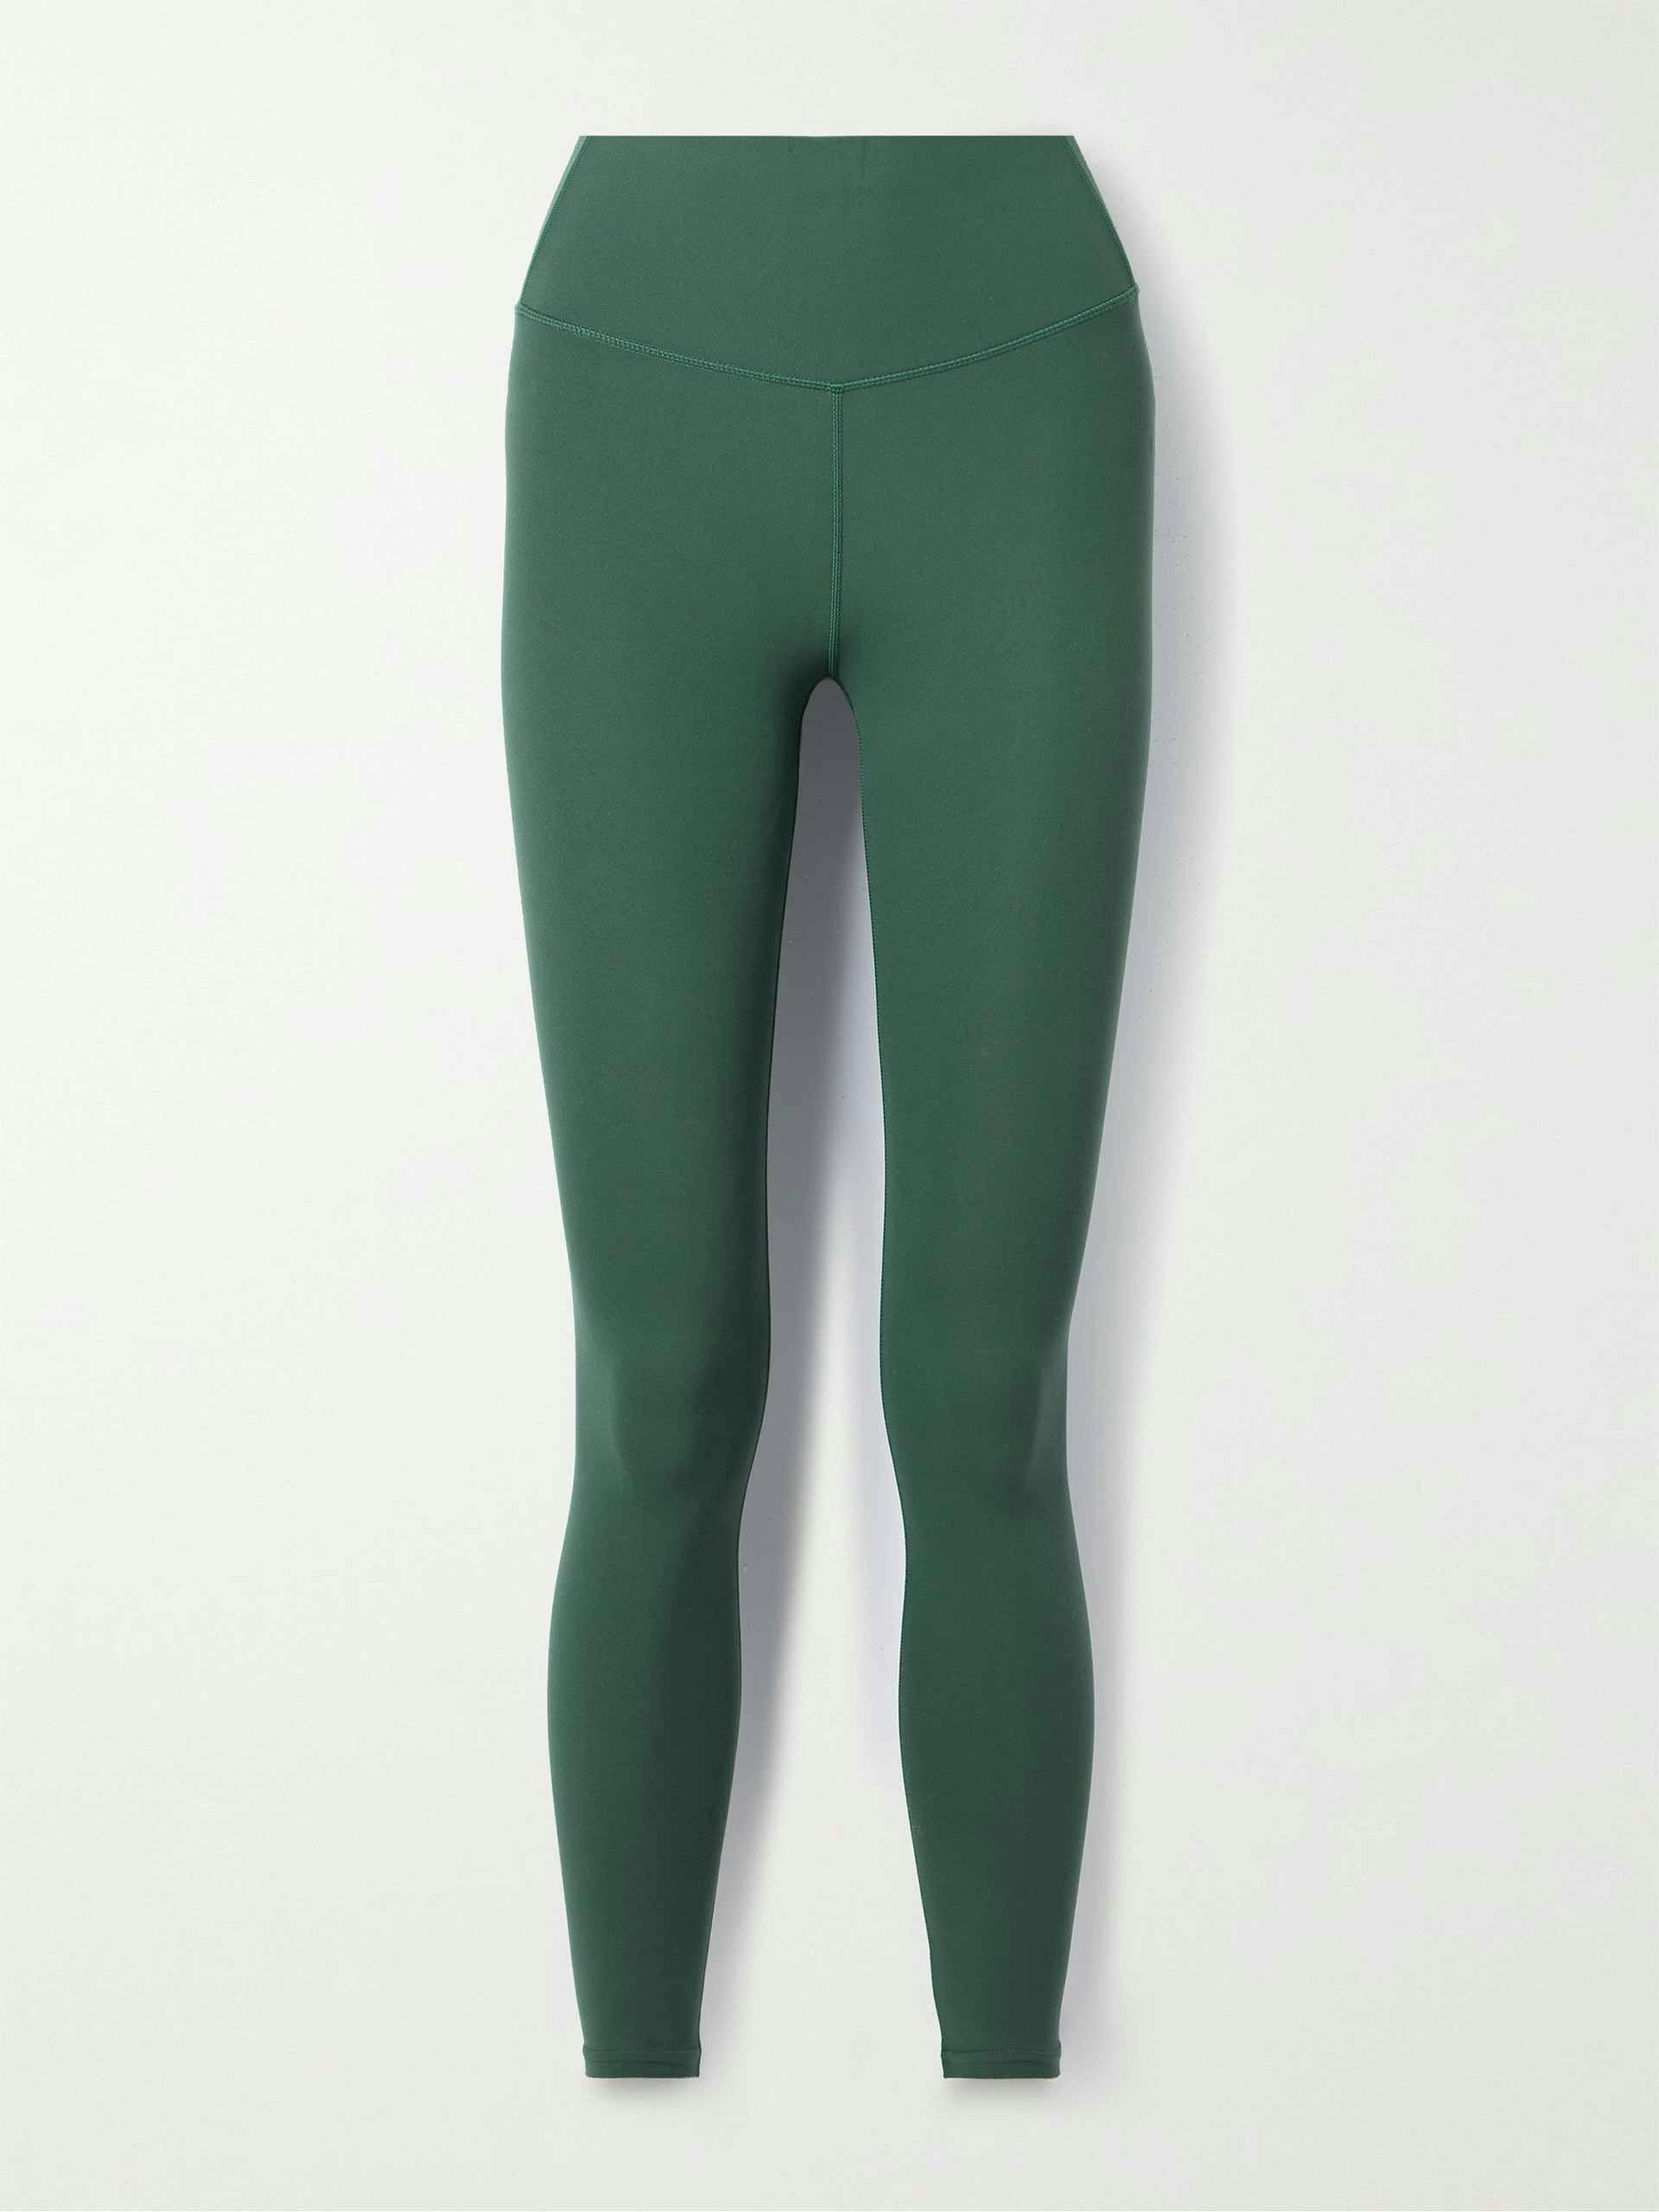 Army green stretch leggings